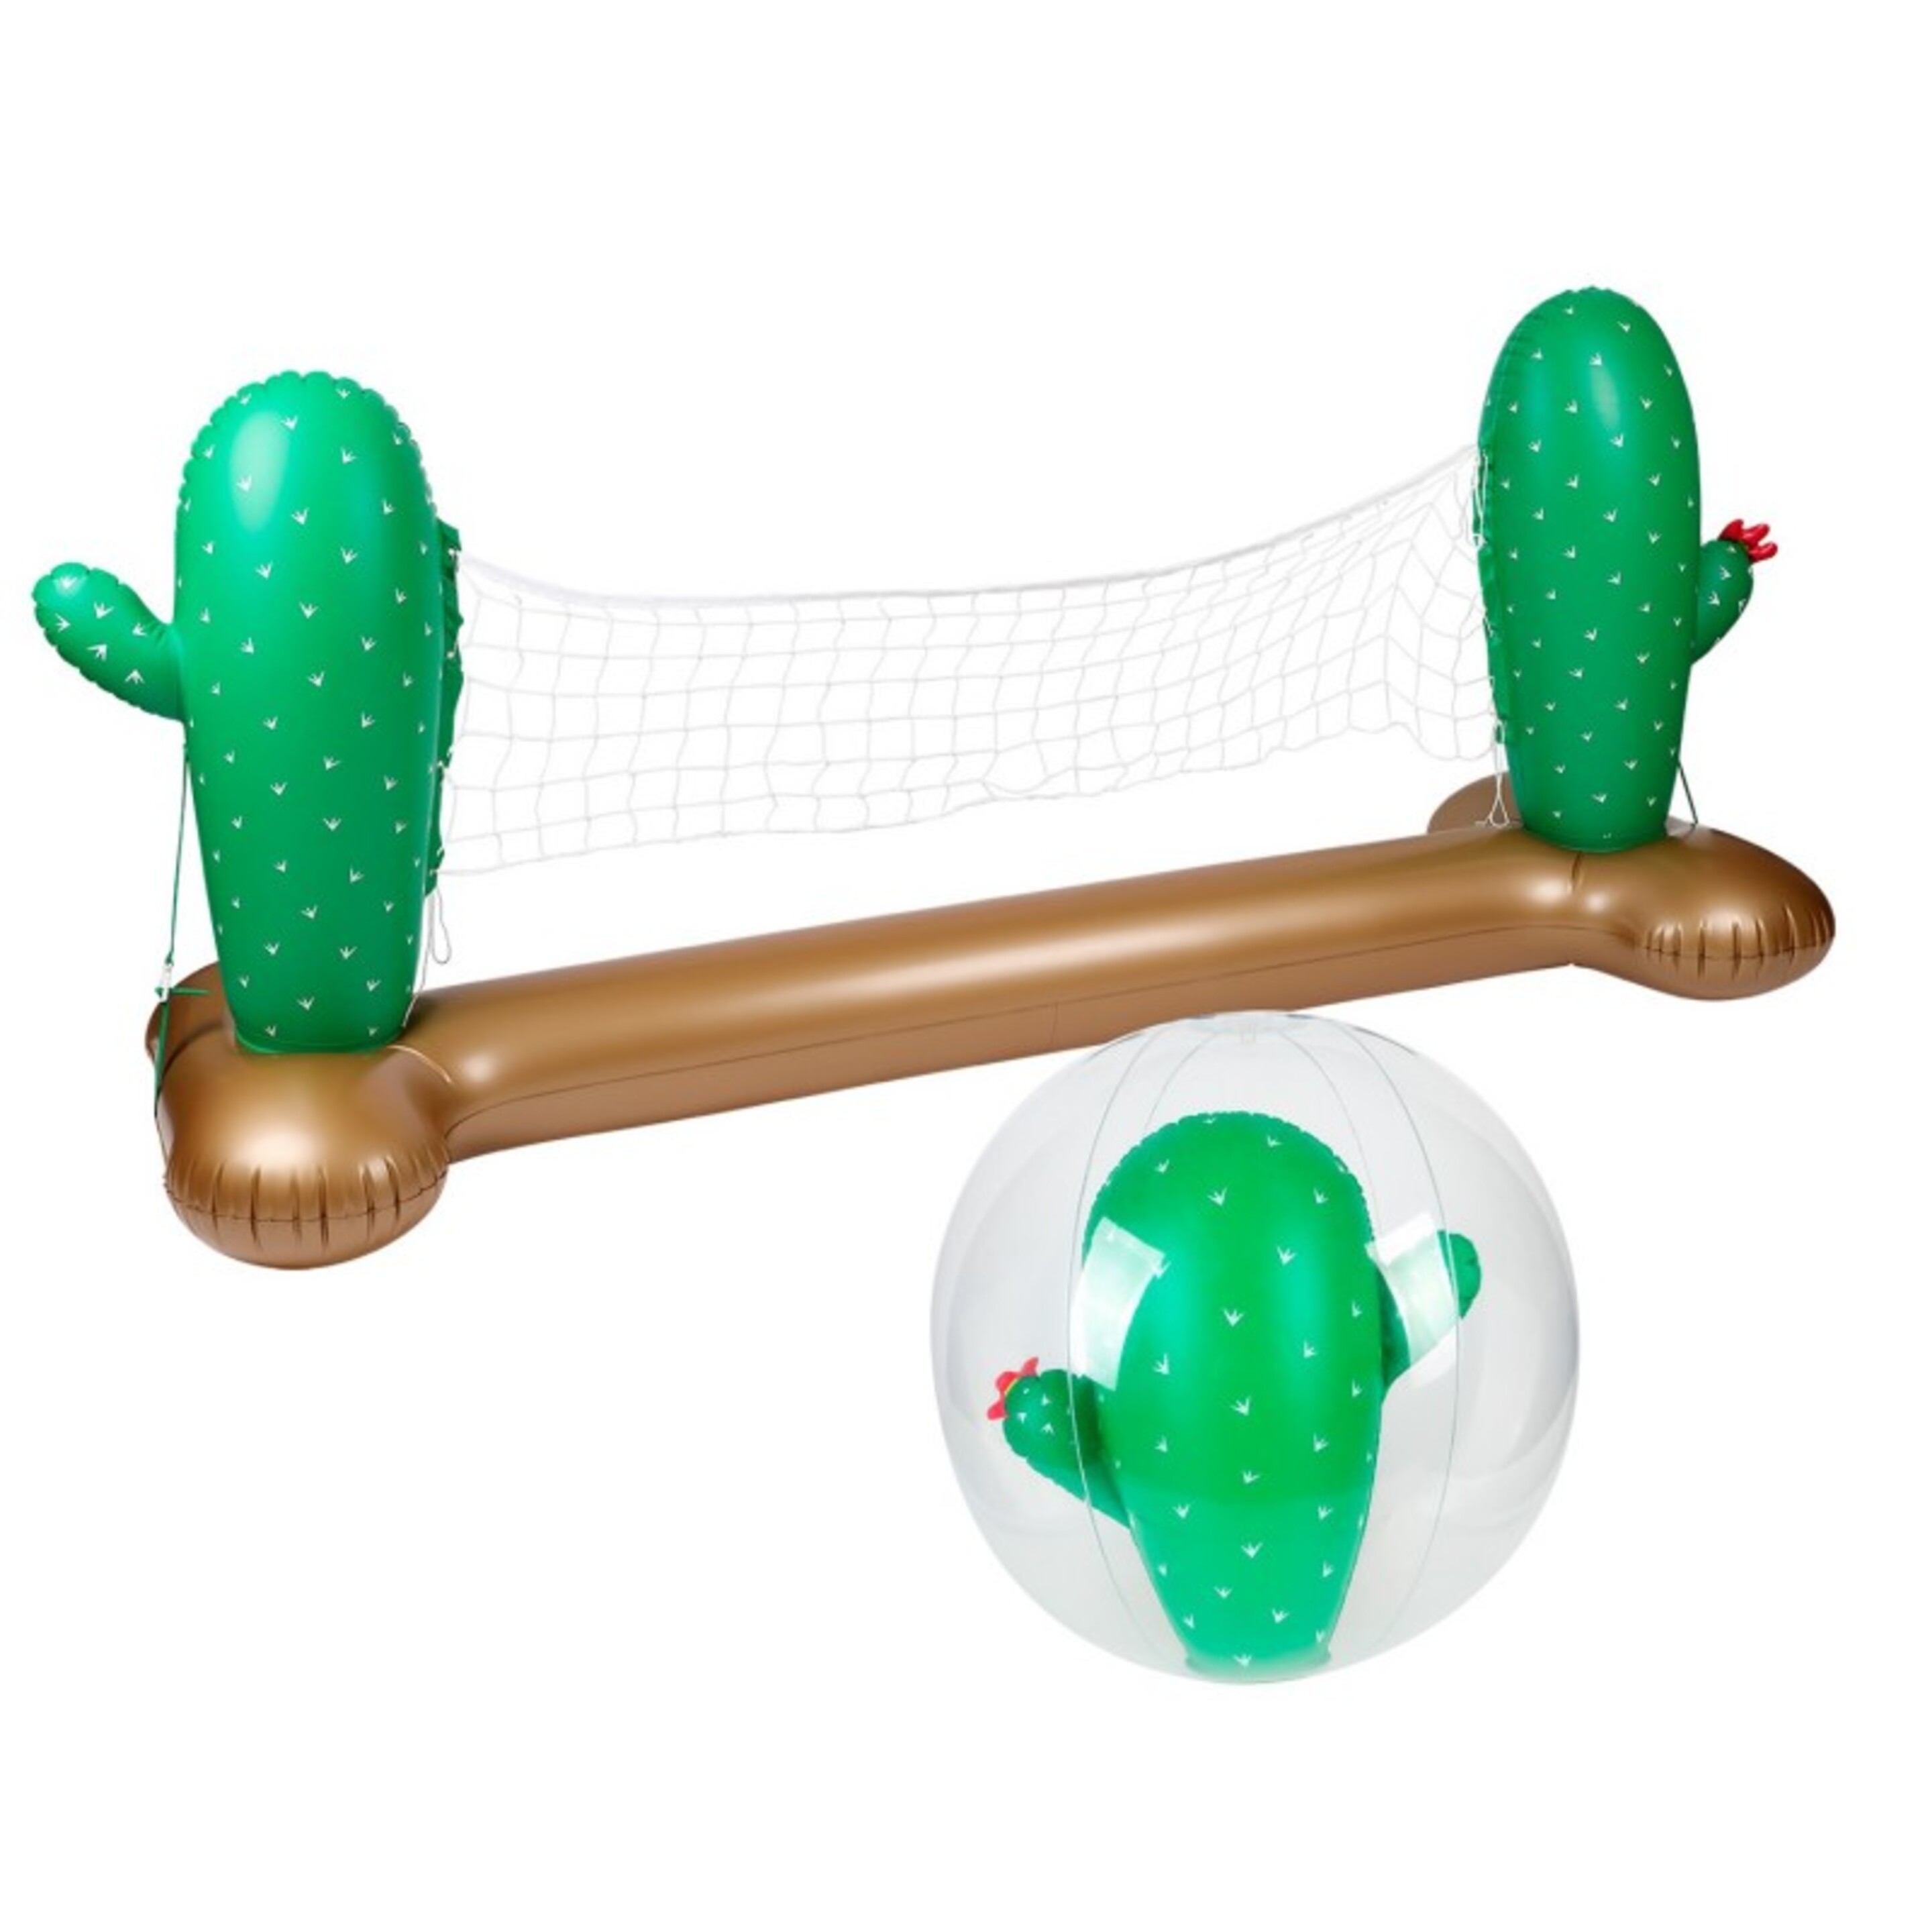 Red Voleibol Inflable Y Flotante Con Pelota Sport Cactus - multicolor - 